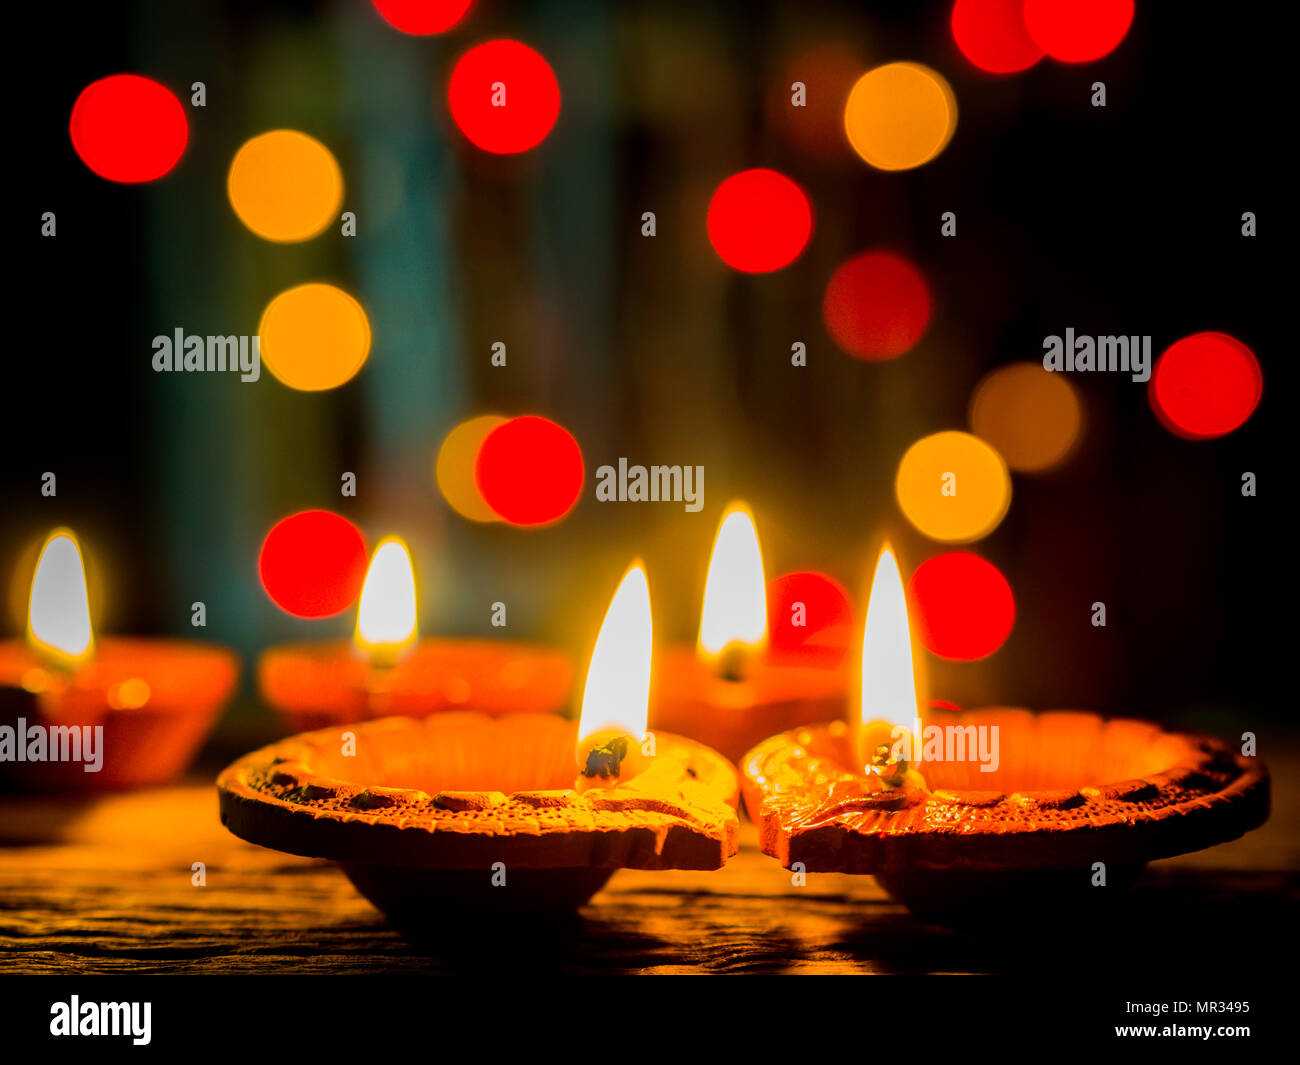 Happy Diwali - Diya lamps lit with bokeh background during diwali ...